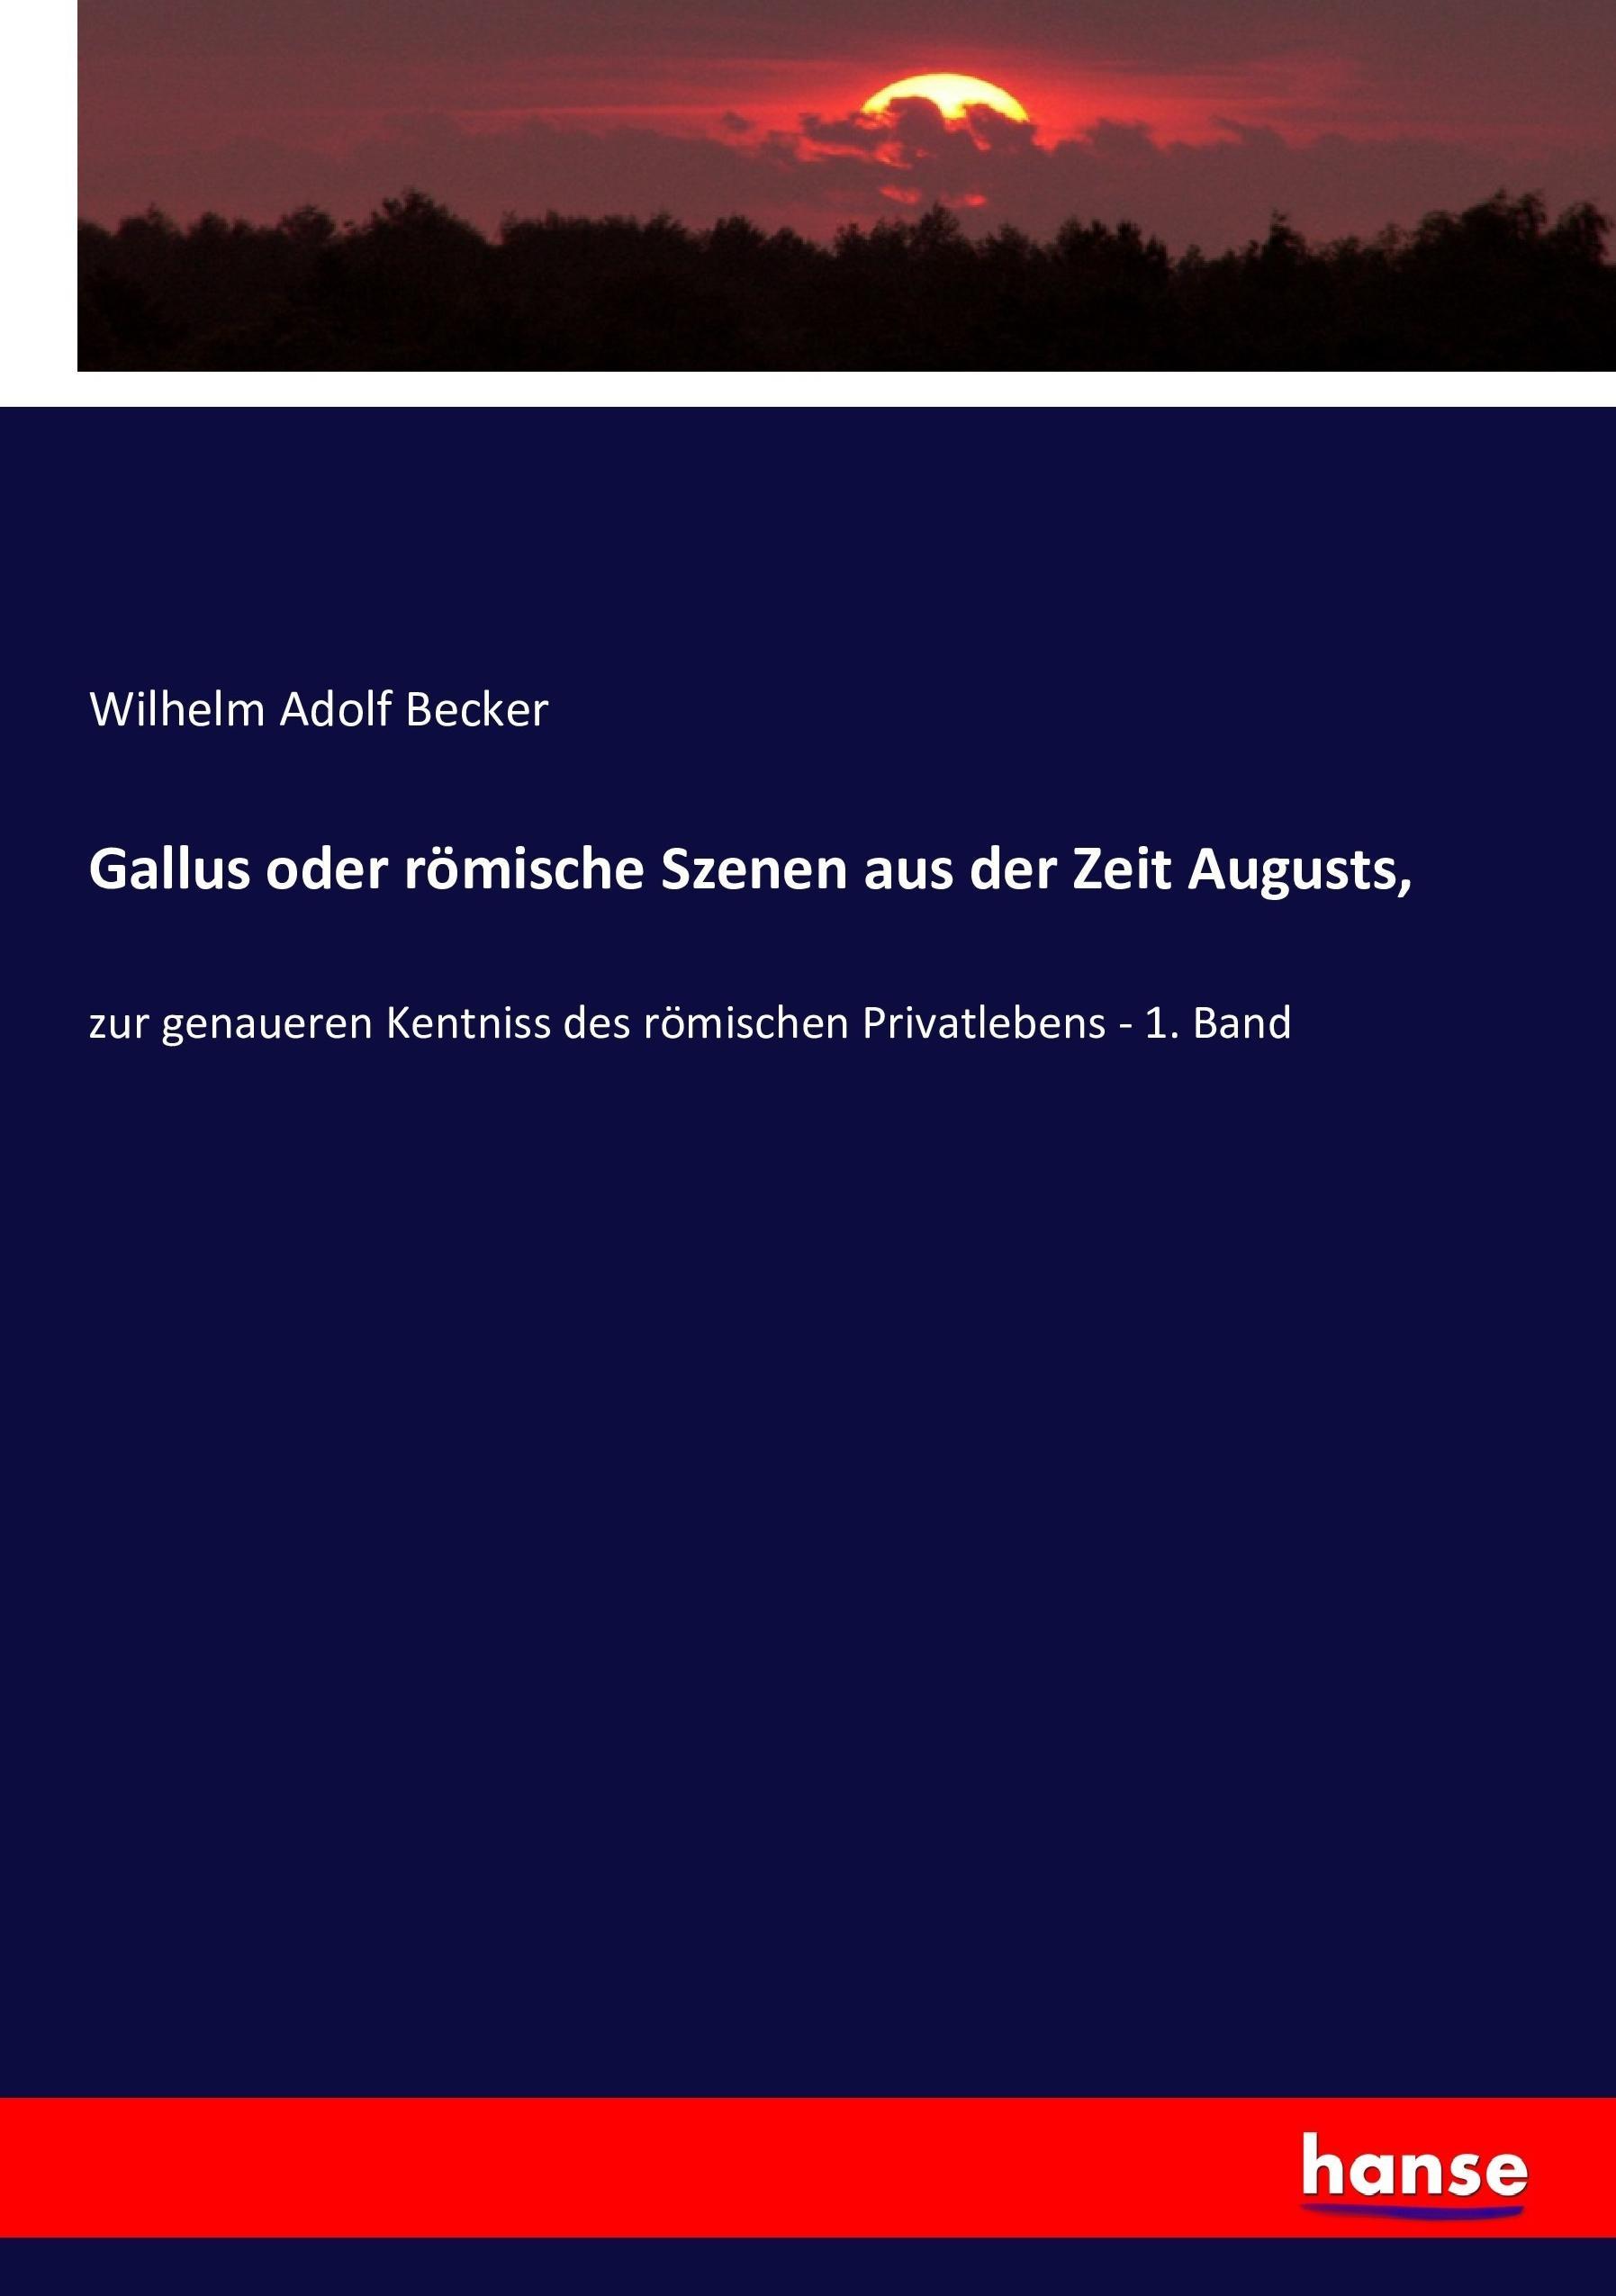 Gallus oder roemische Szenen aus der Zeit Augusts - Becker, Wilhelm Adolf